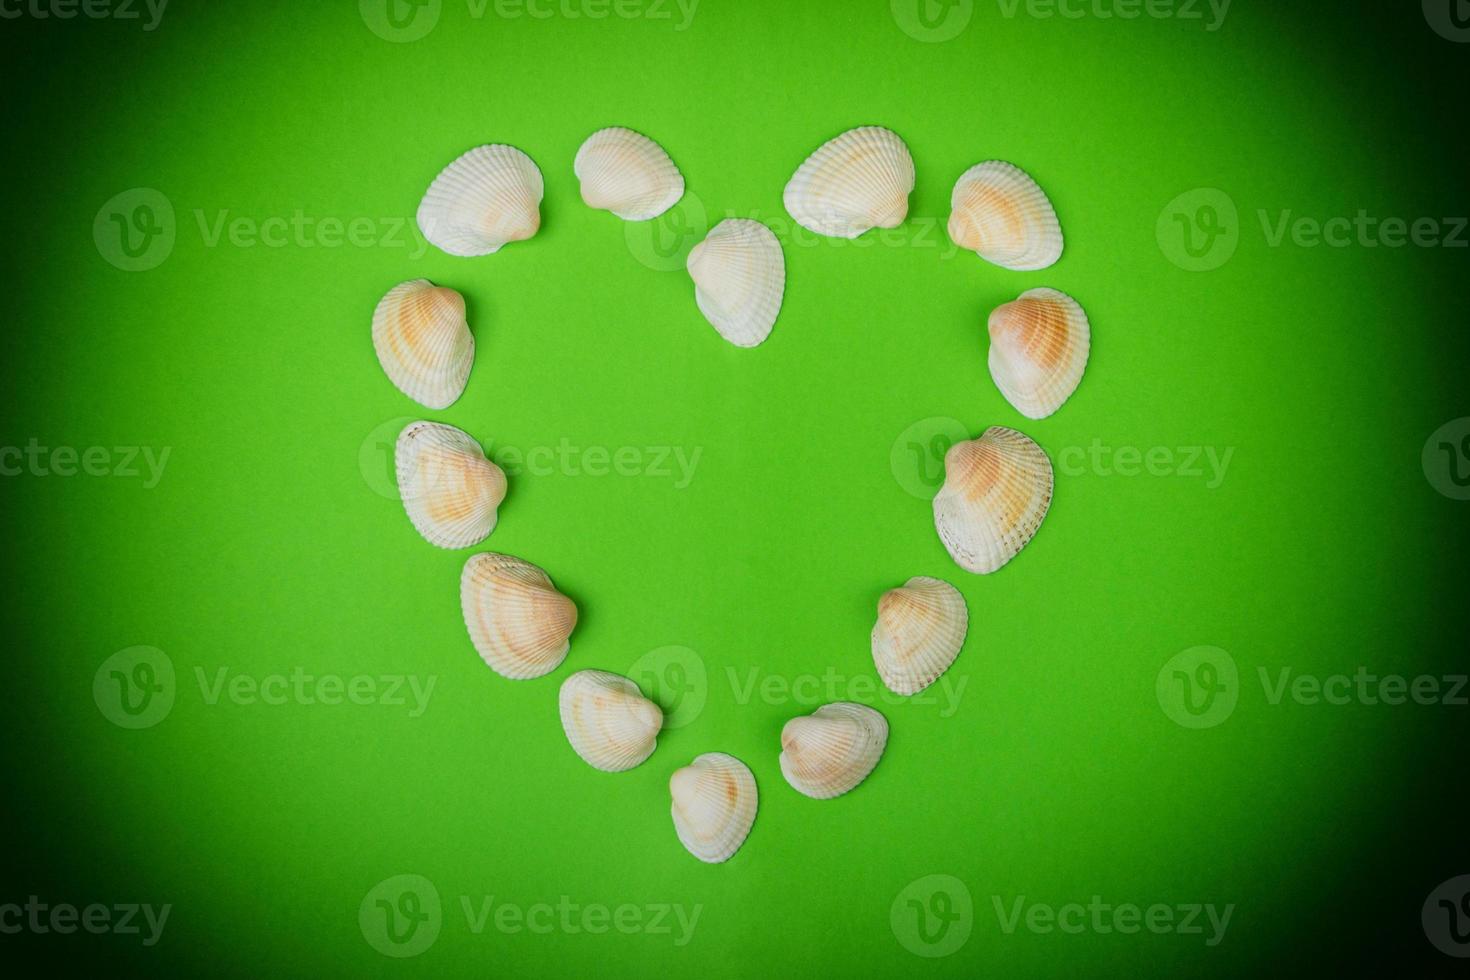 Symbolisches Herz aus Muscheln, die auf grünem Hintergrund liegen foto